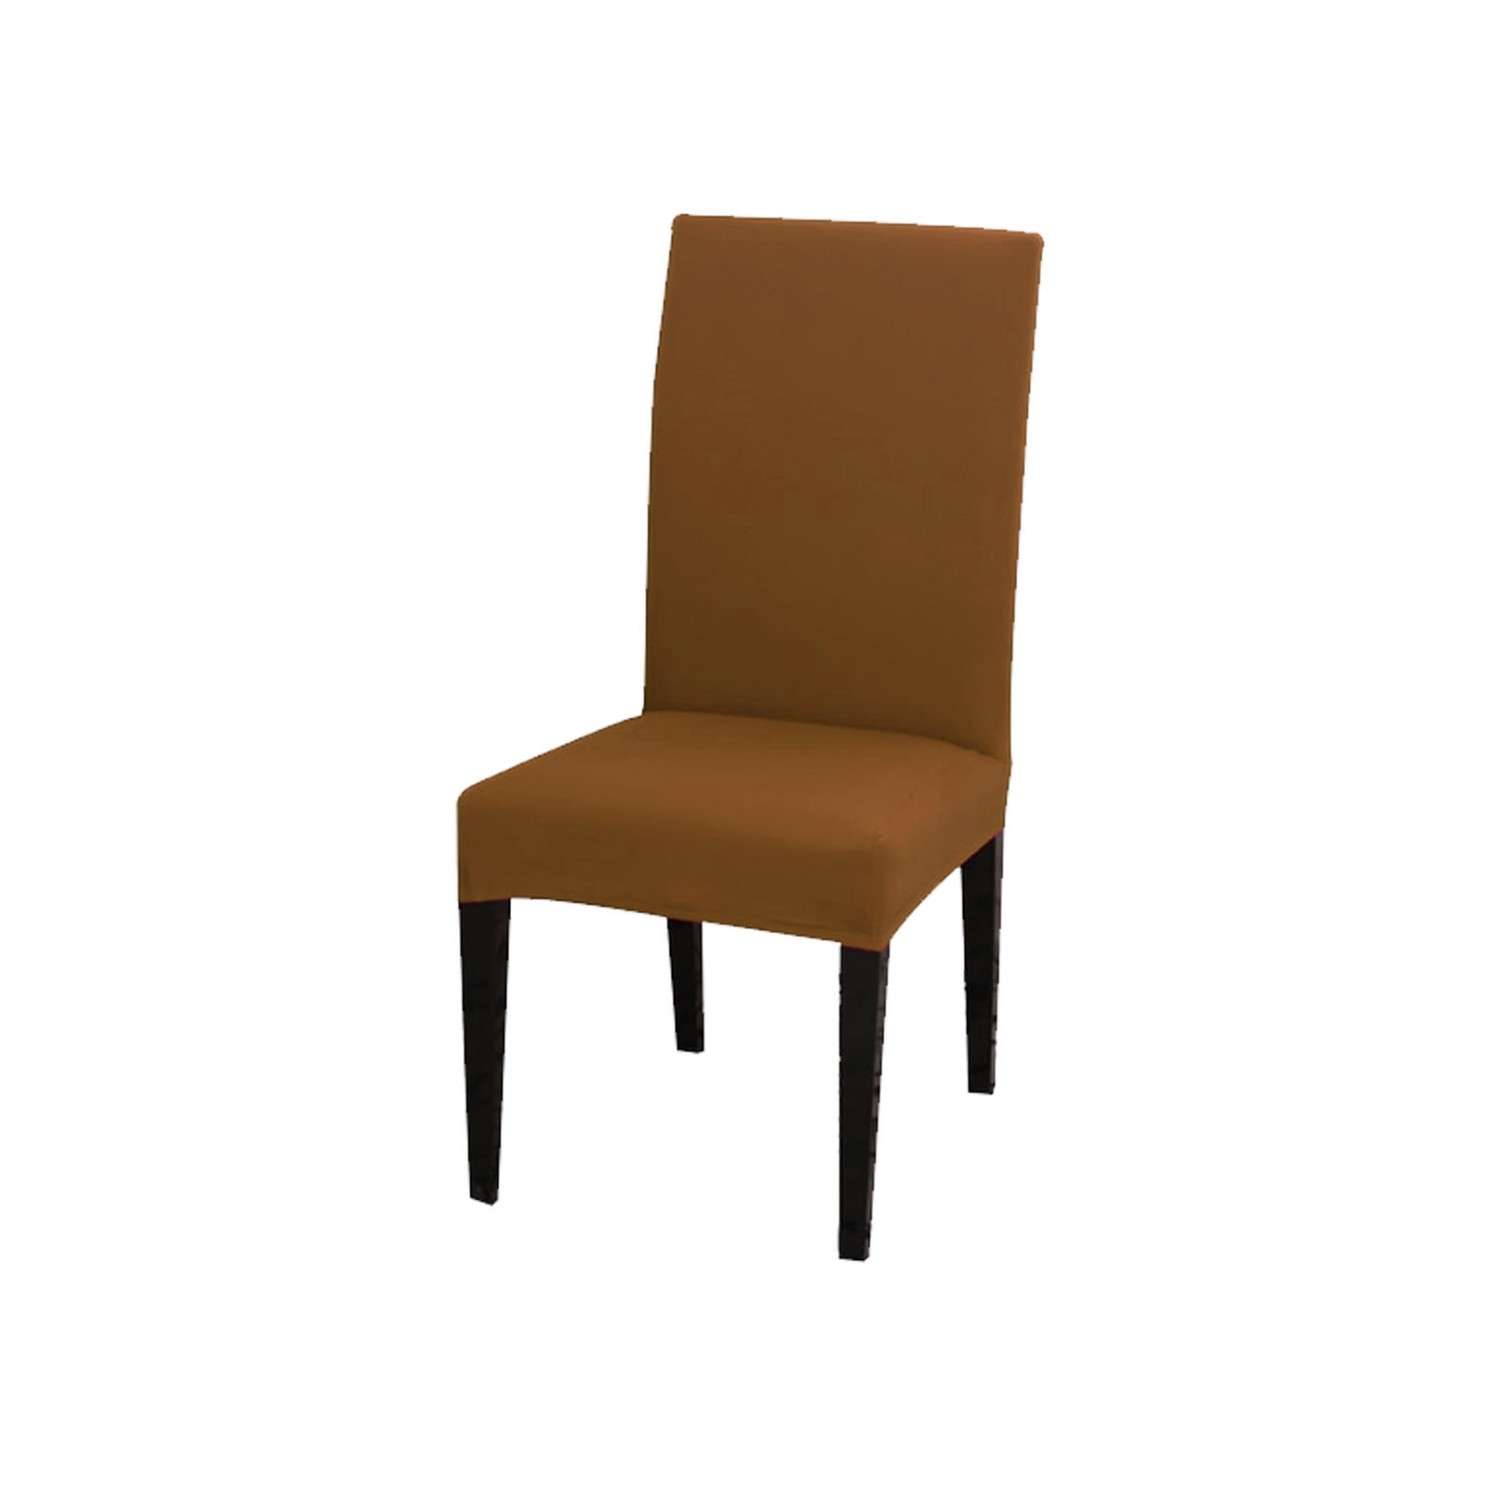 Чехол на стул LuxAlto Коллекция Jersey коричневый - фото 1